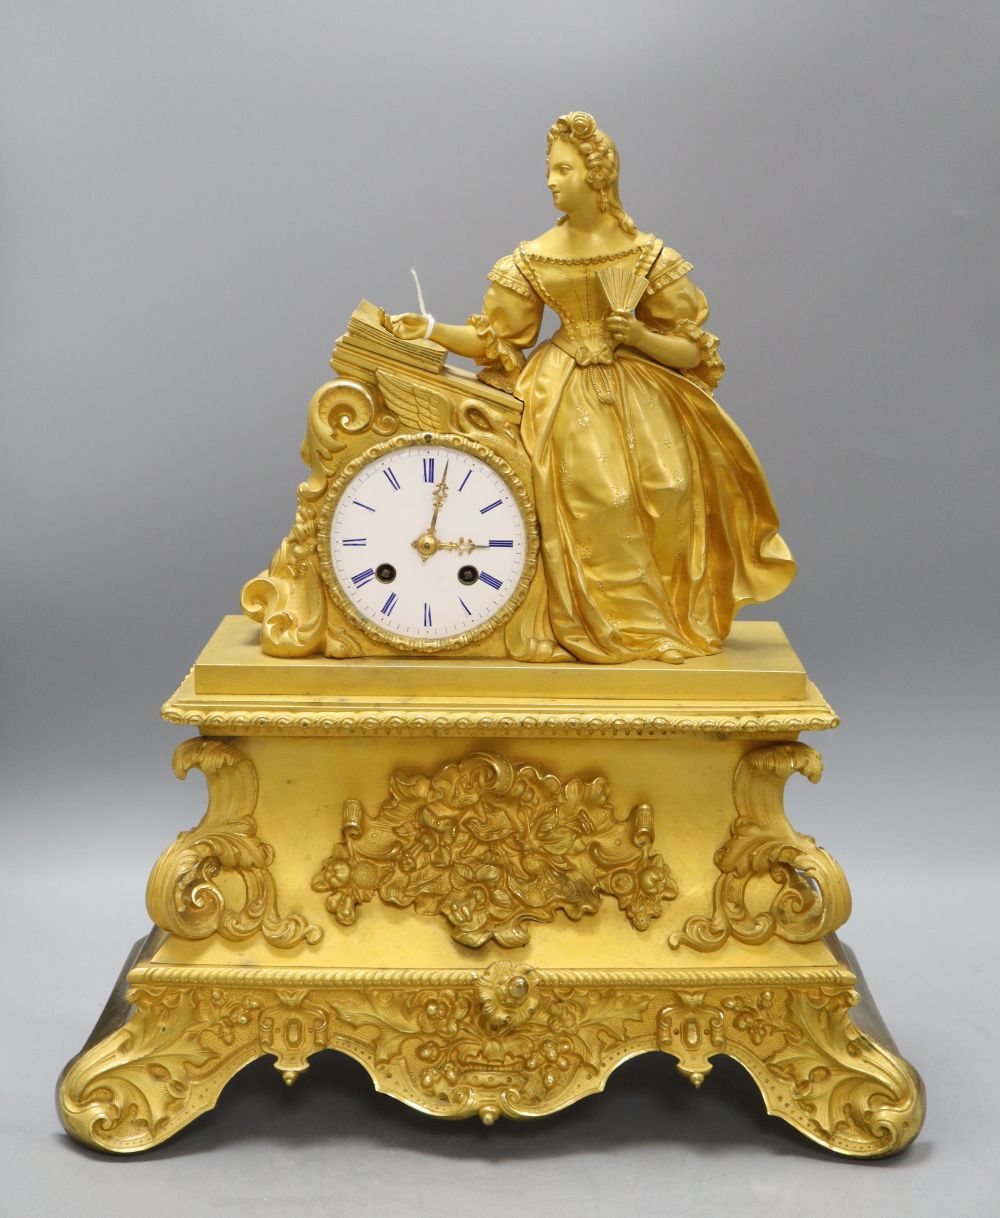 A French ormolu clock with a surmount of Madam Sevigne, height 45cm